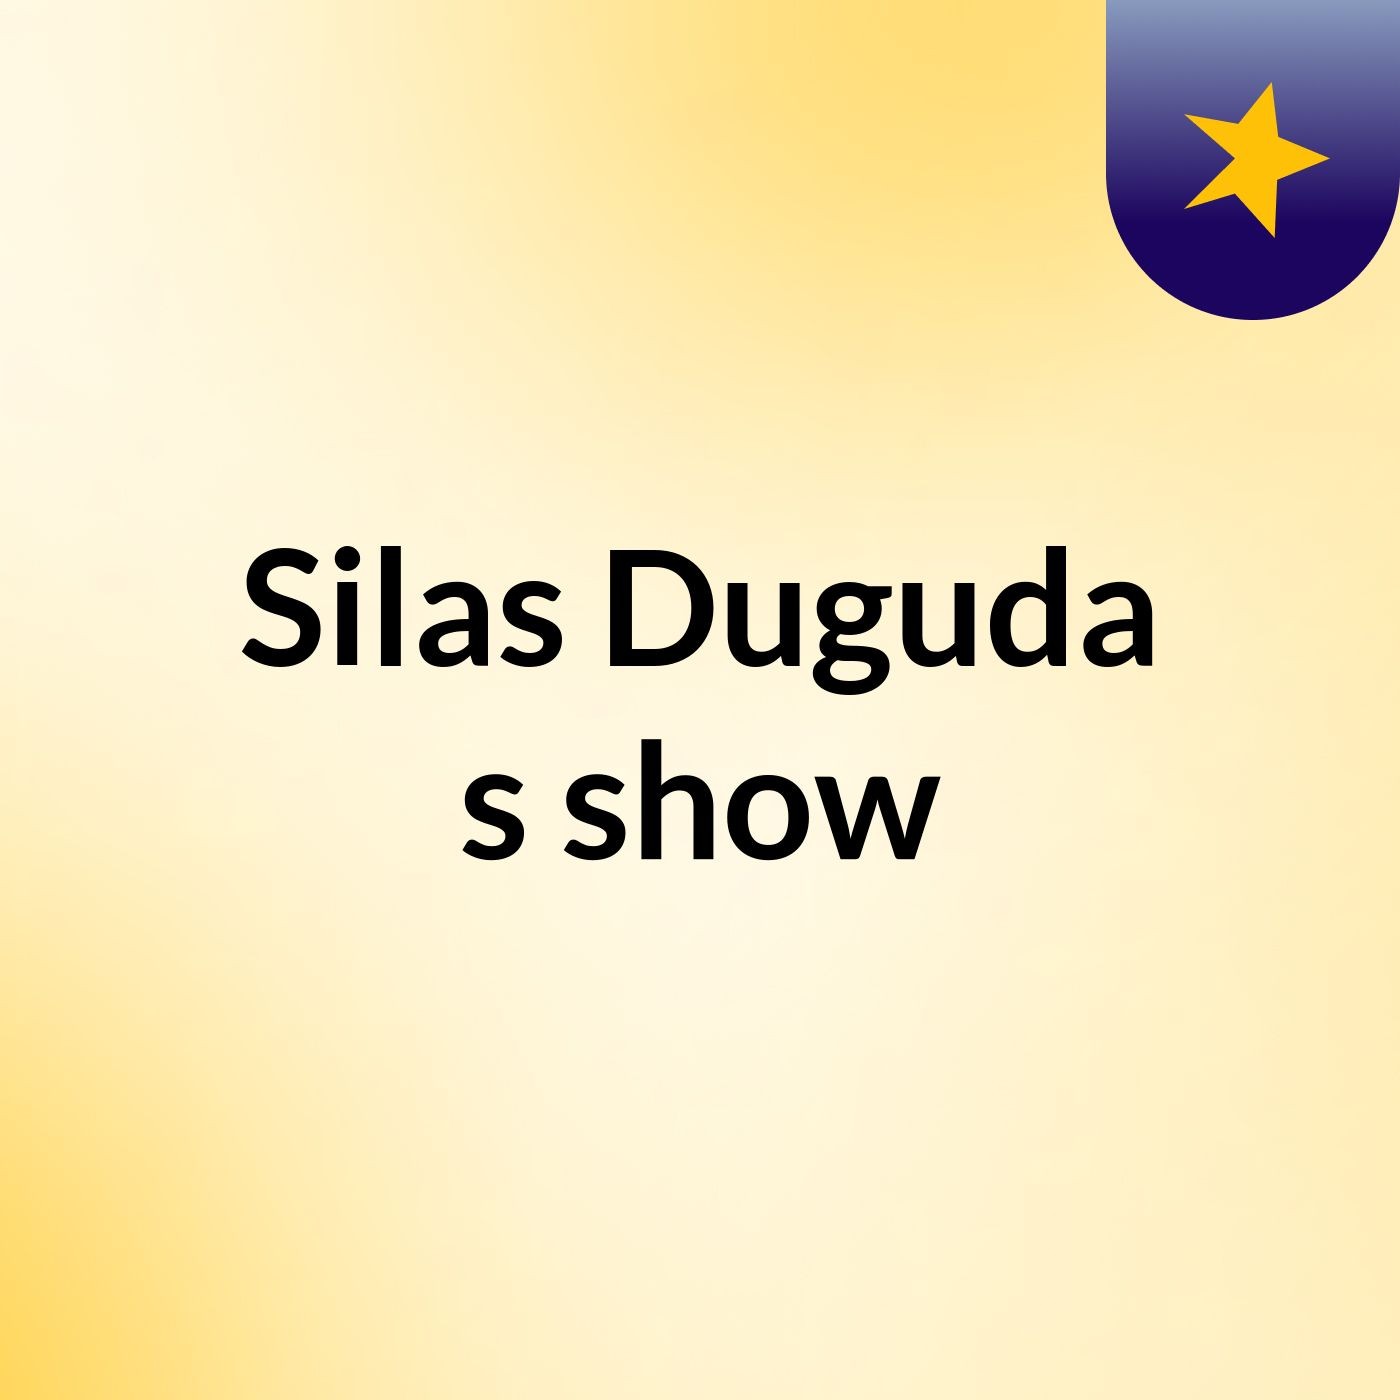 Silas Duguda's show